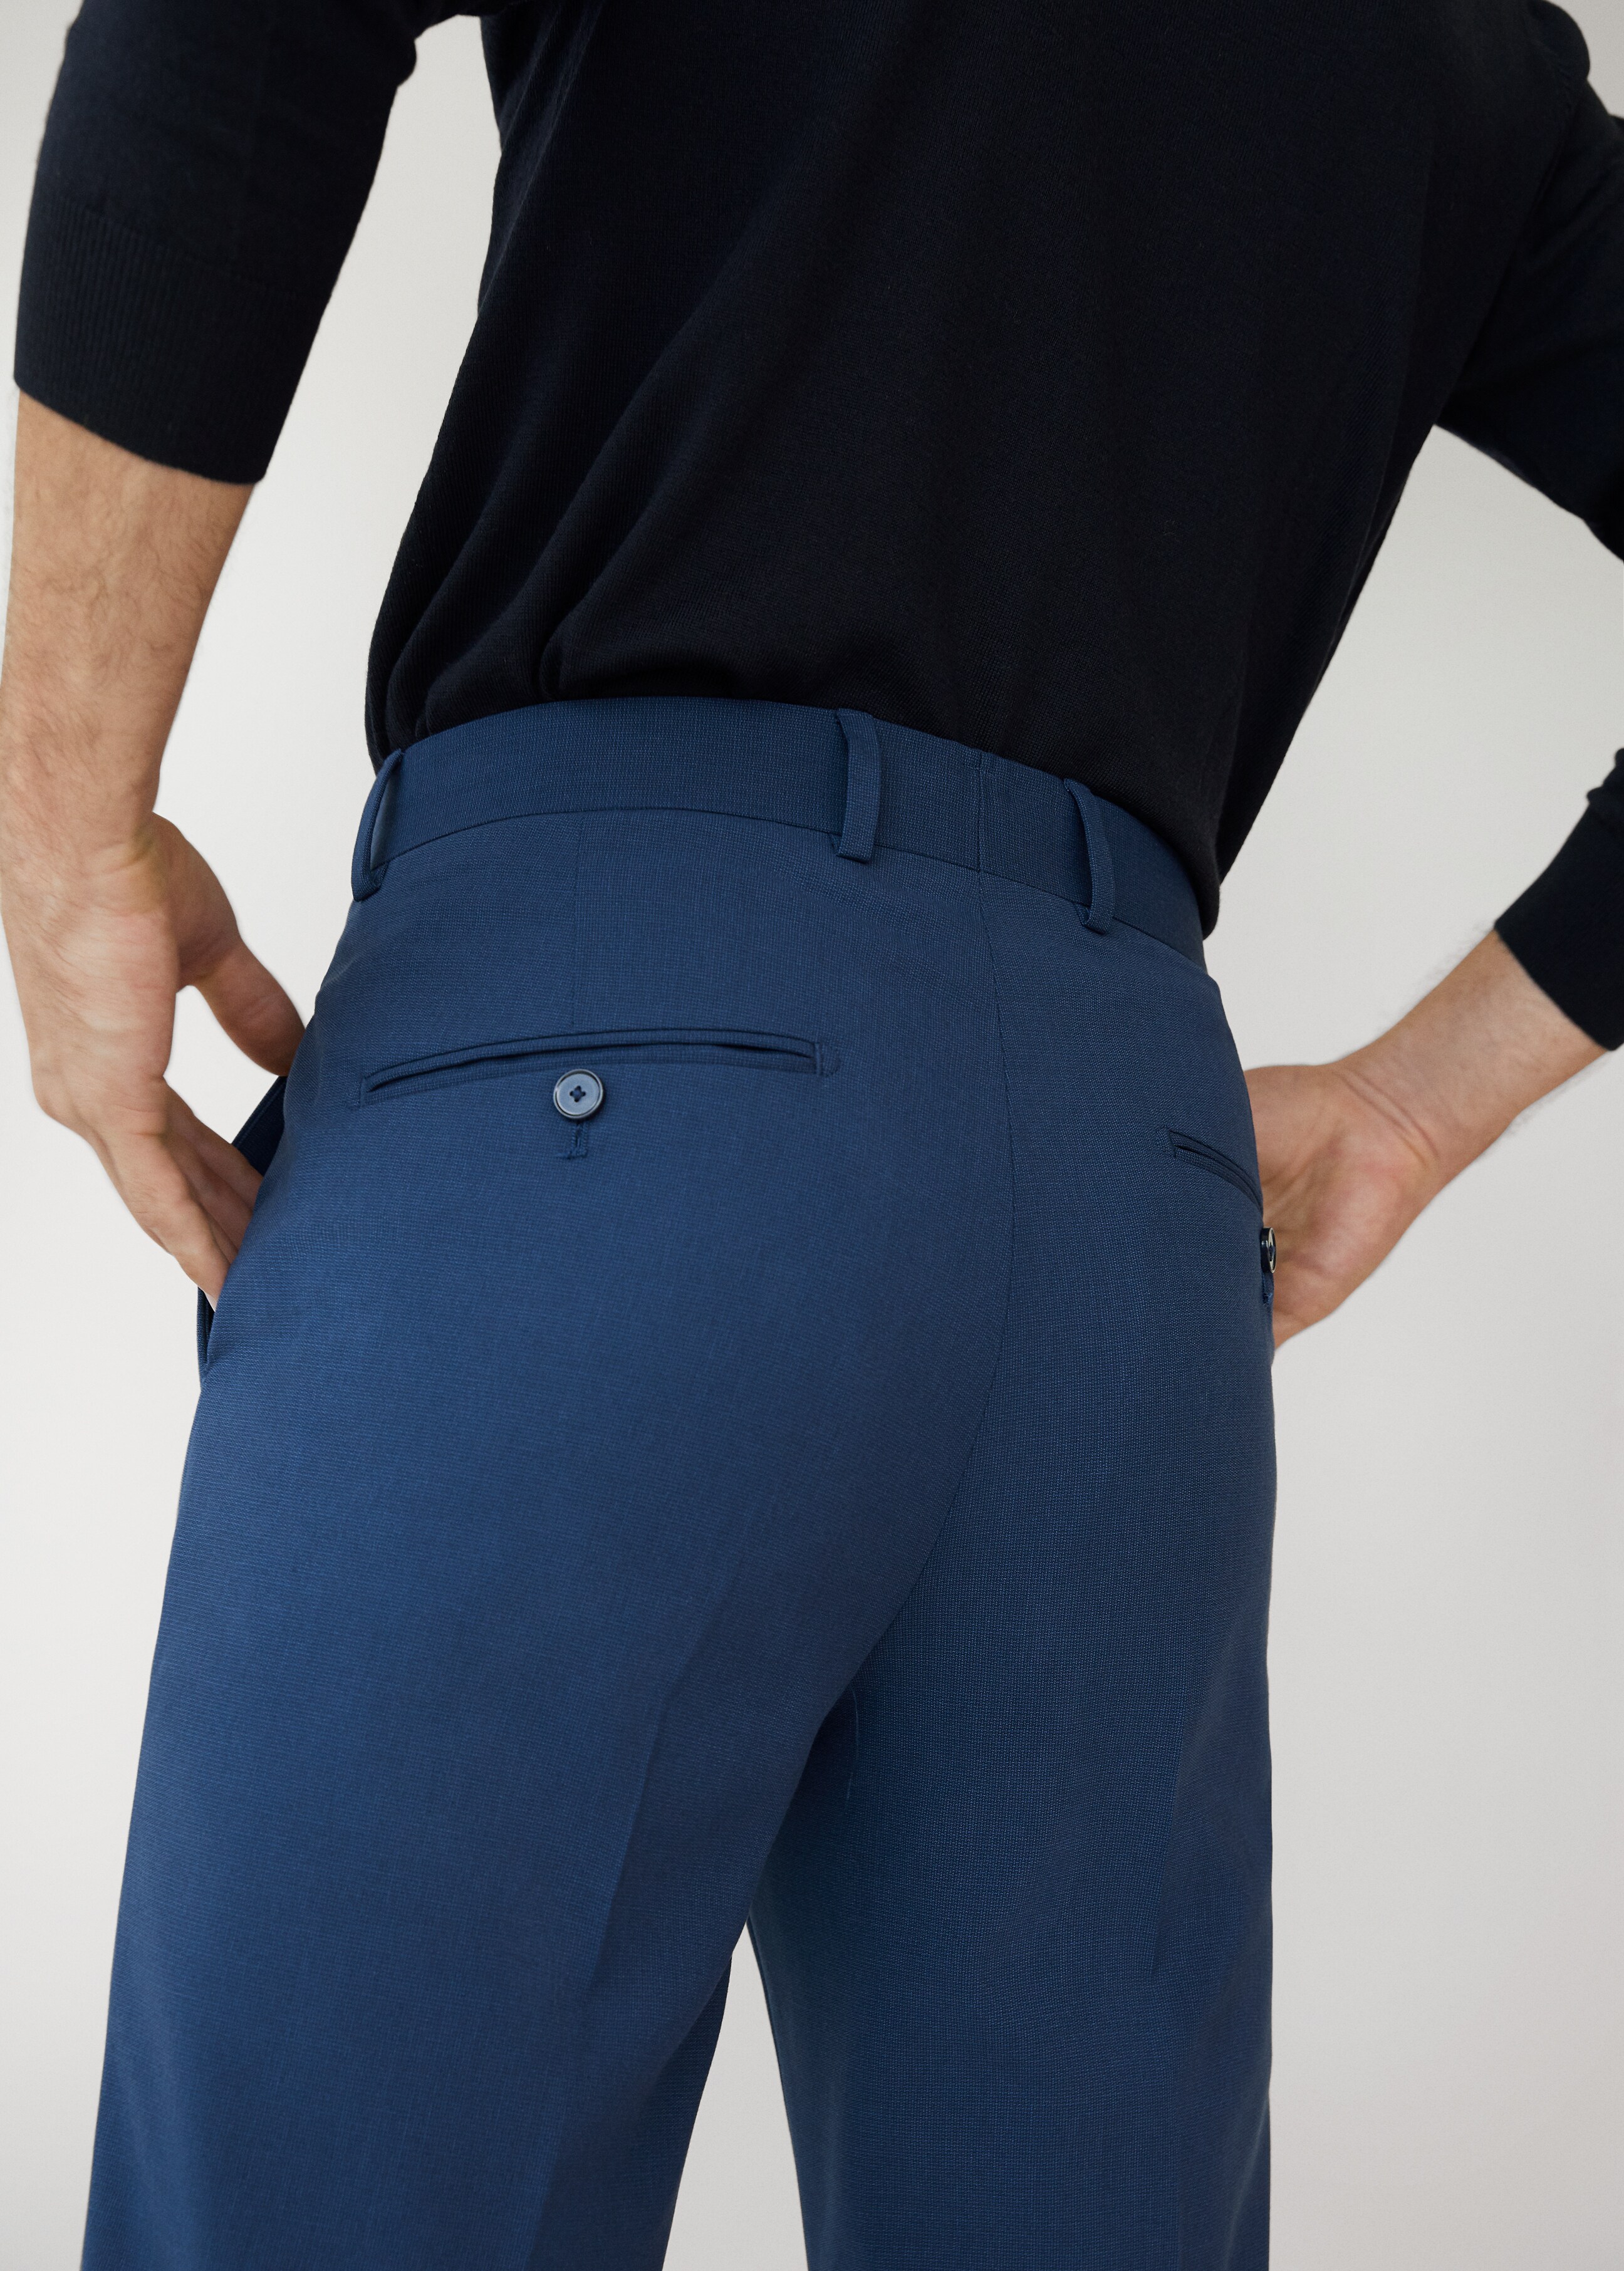 Oblekové kalhoty slim fit s mikro strukturou - Detail zboží 3